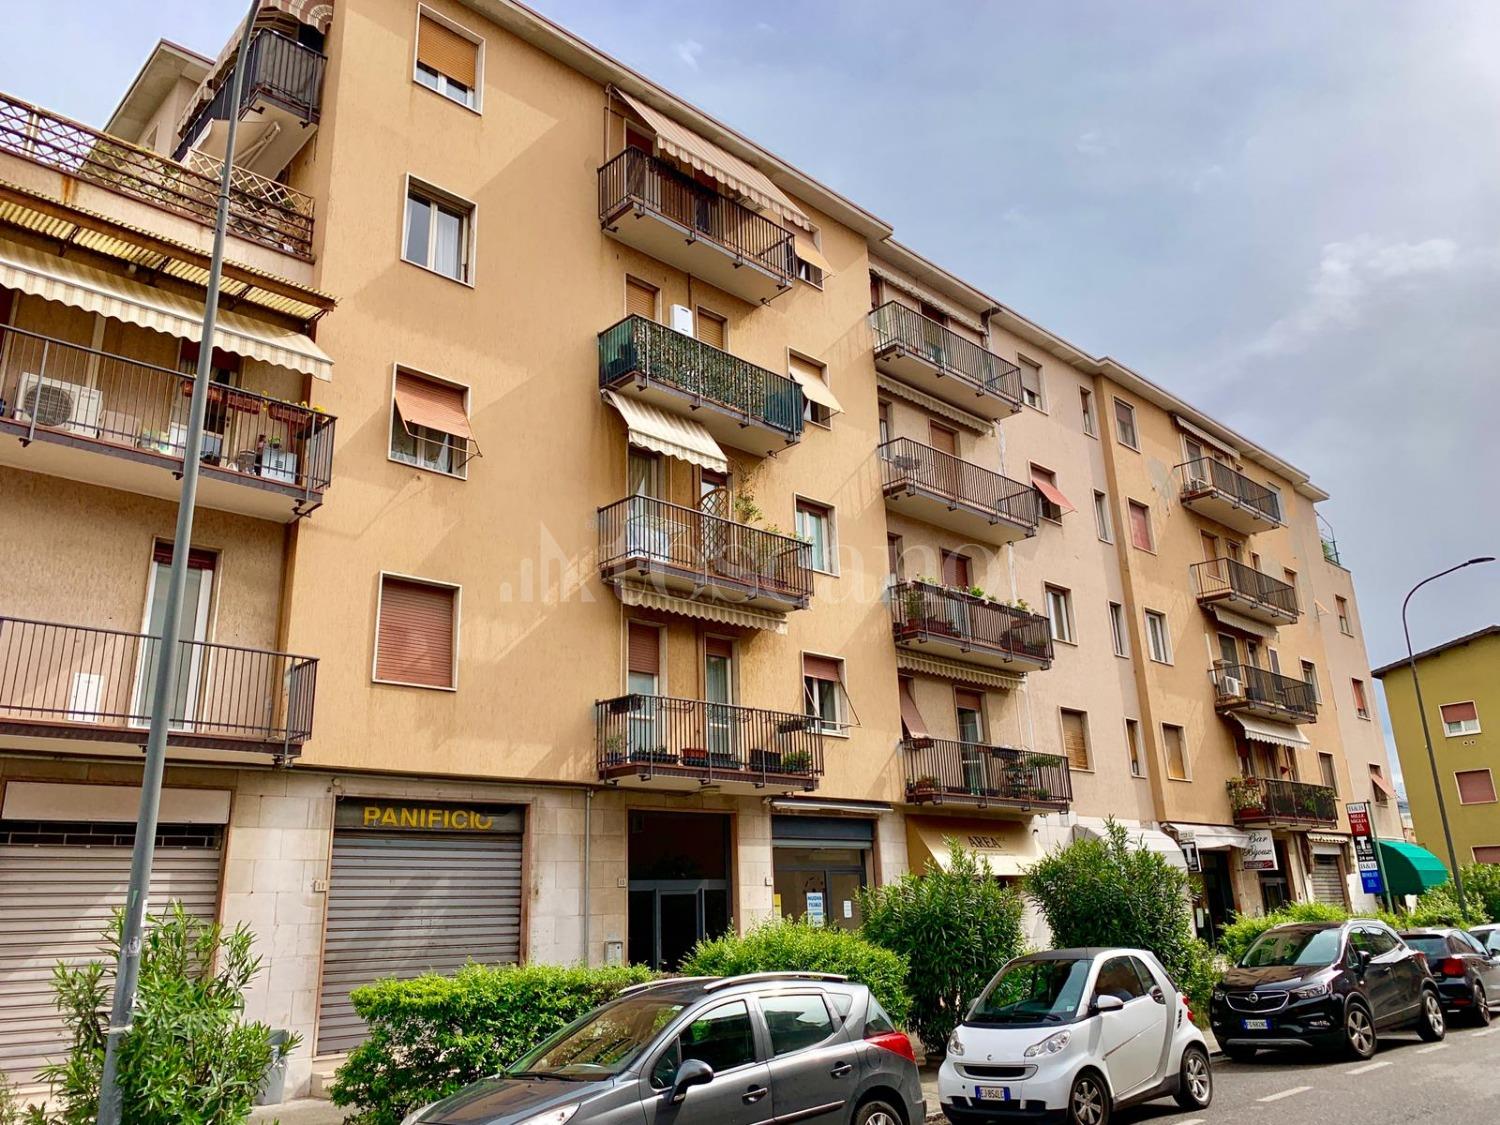 Vendita Casa A Brescia In Poliambulanza Poliambulanza 31 2019